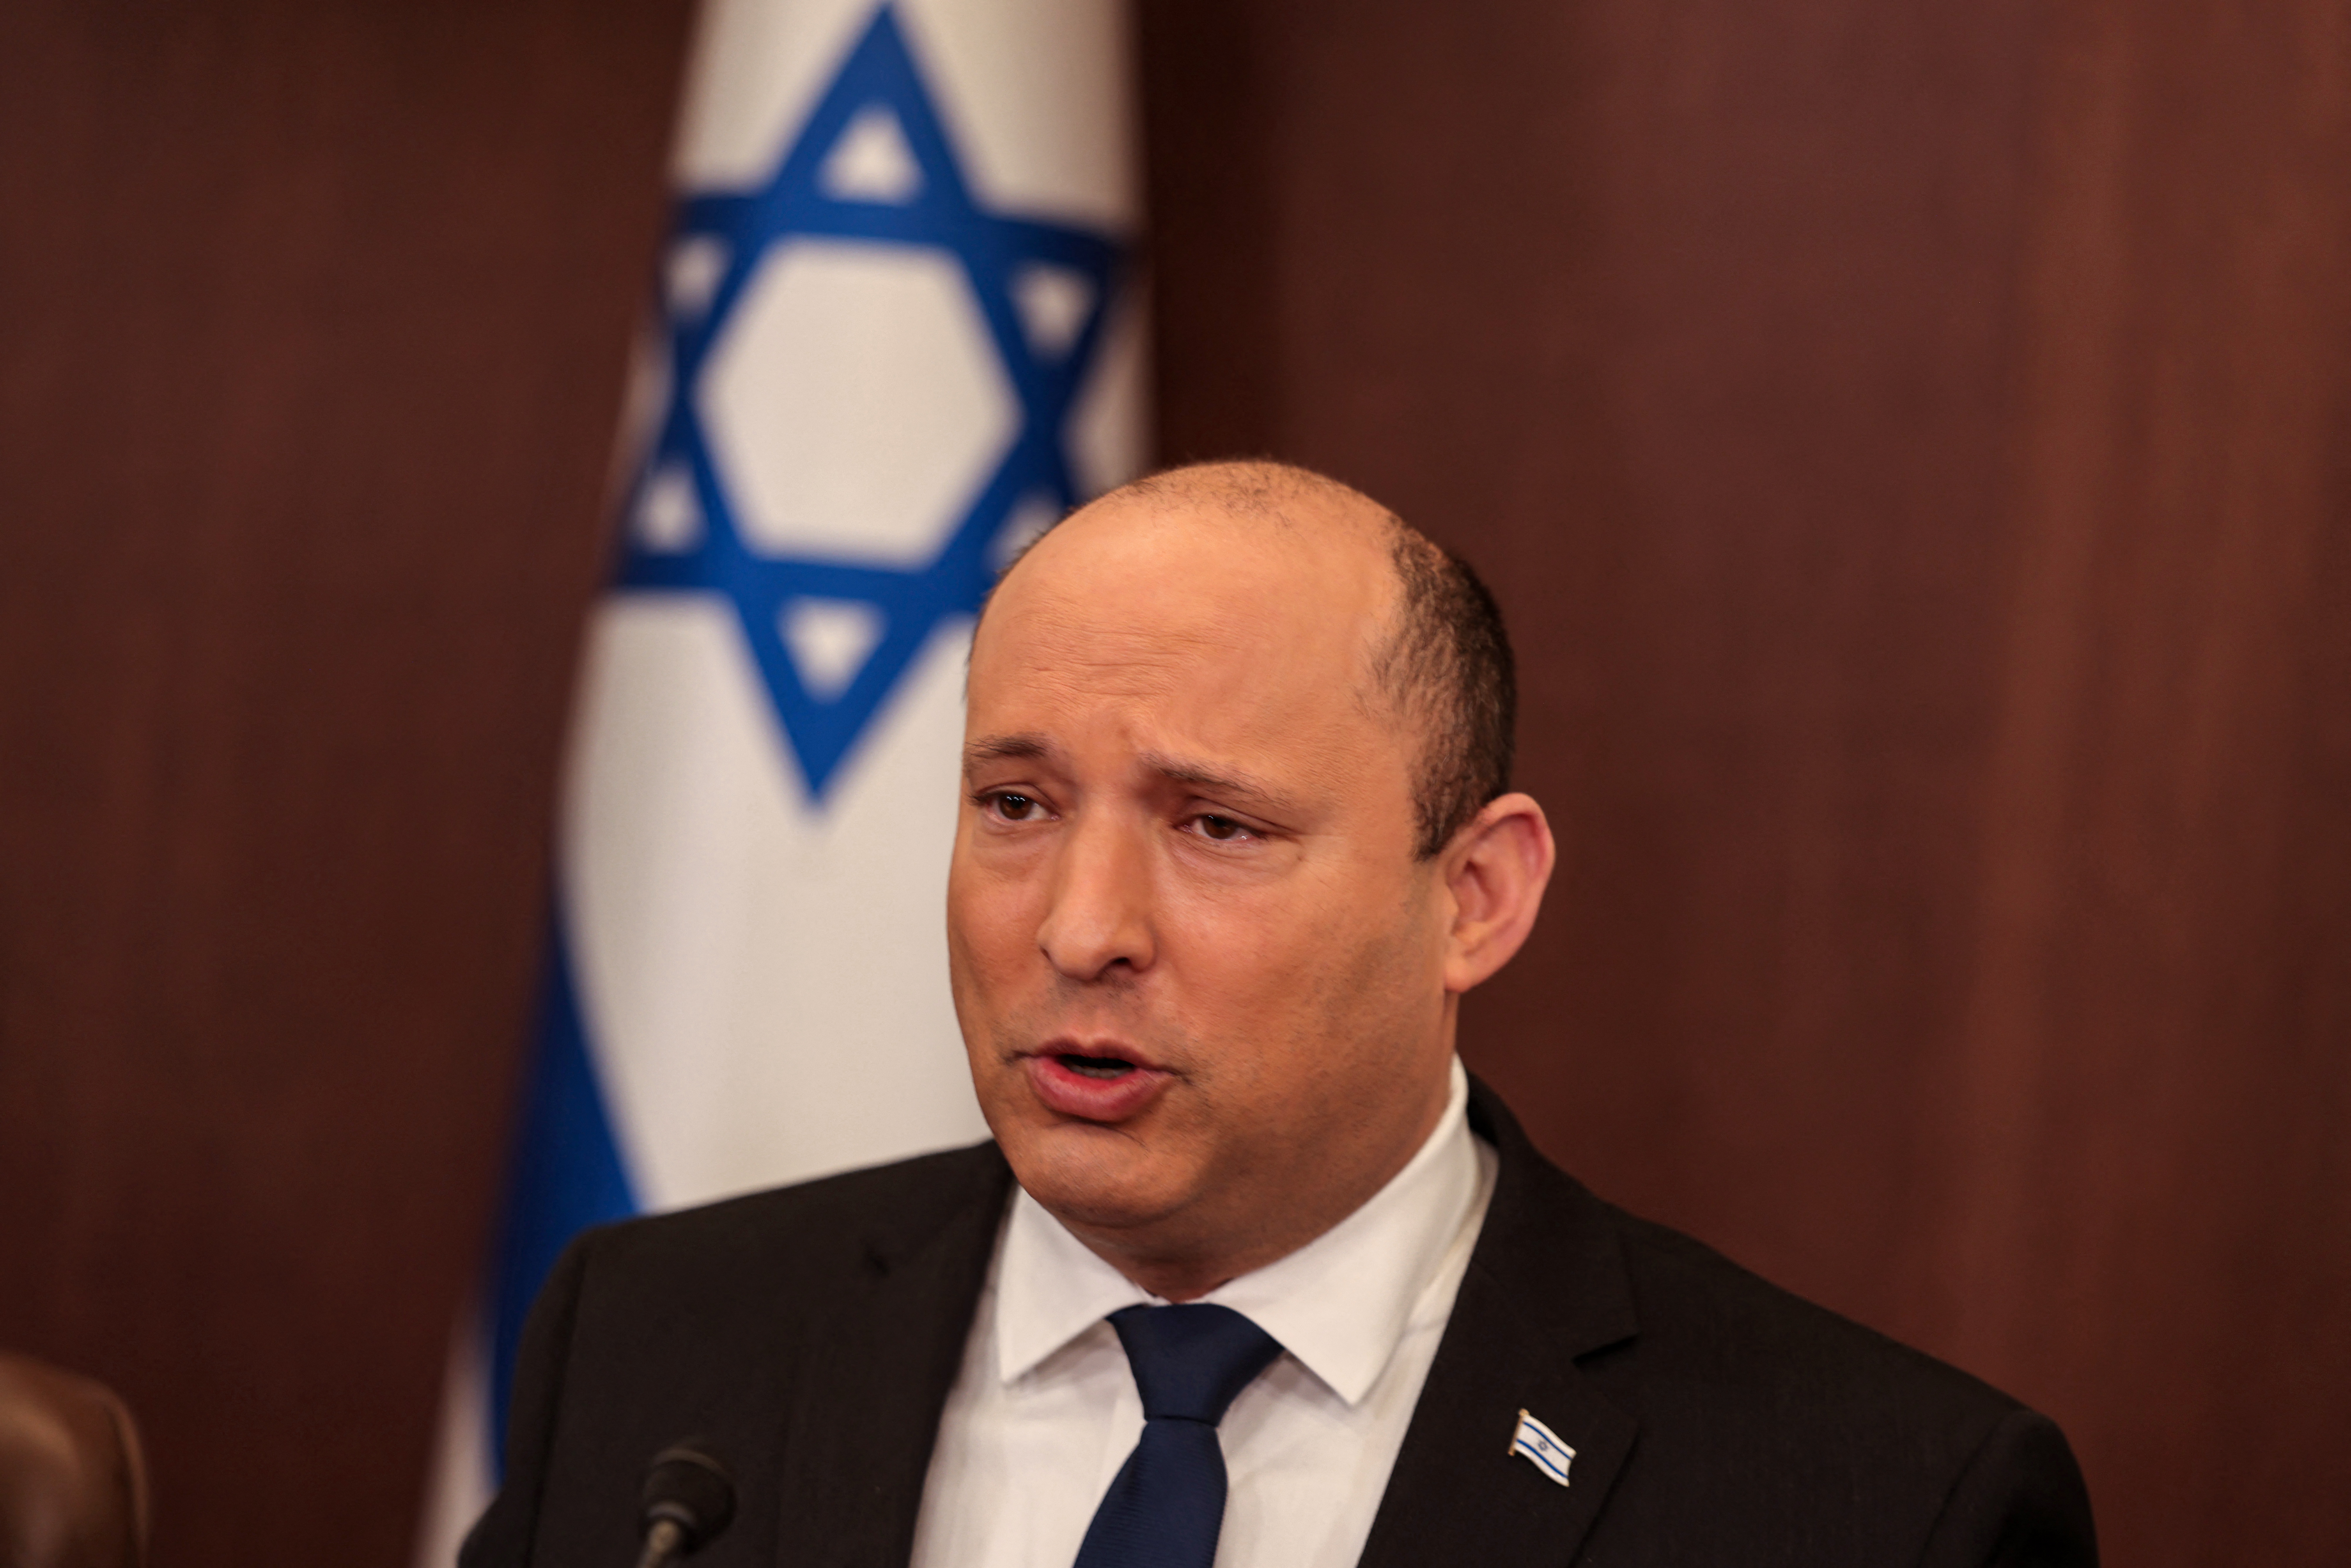 Haladéktalanul hagyják el Ukrajnát - szólította fel honfitársait az izraeli miniszterelnök